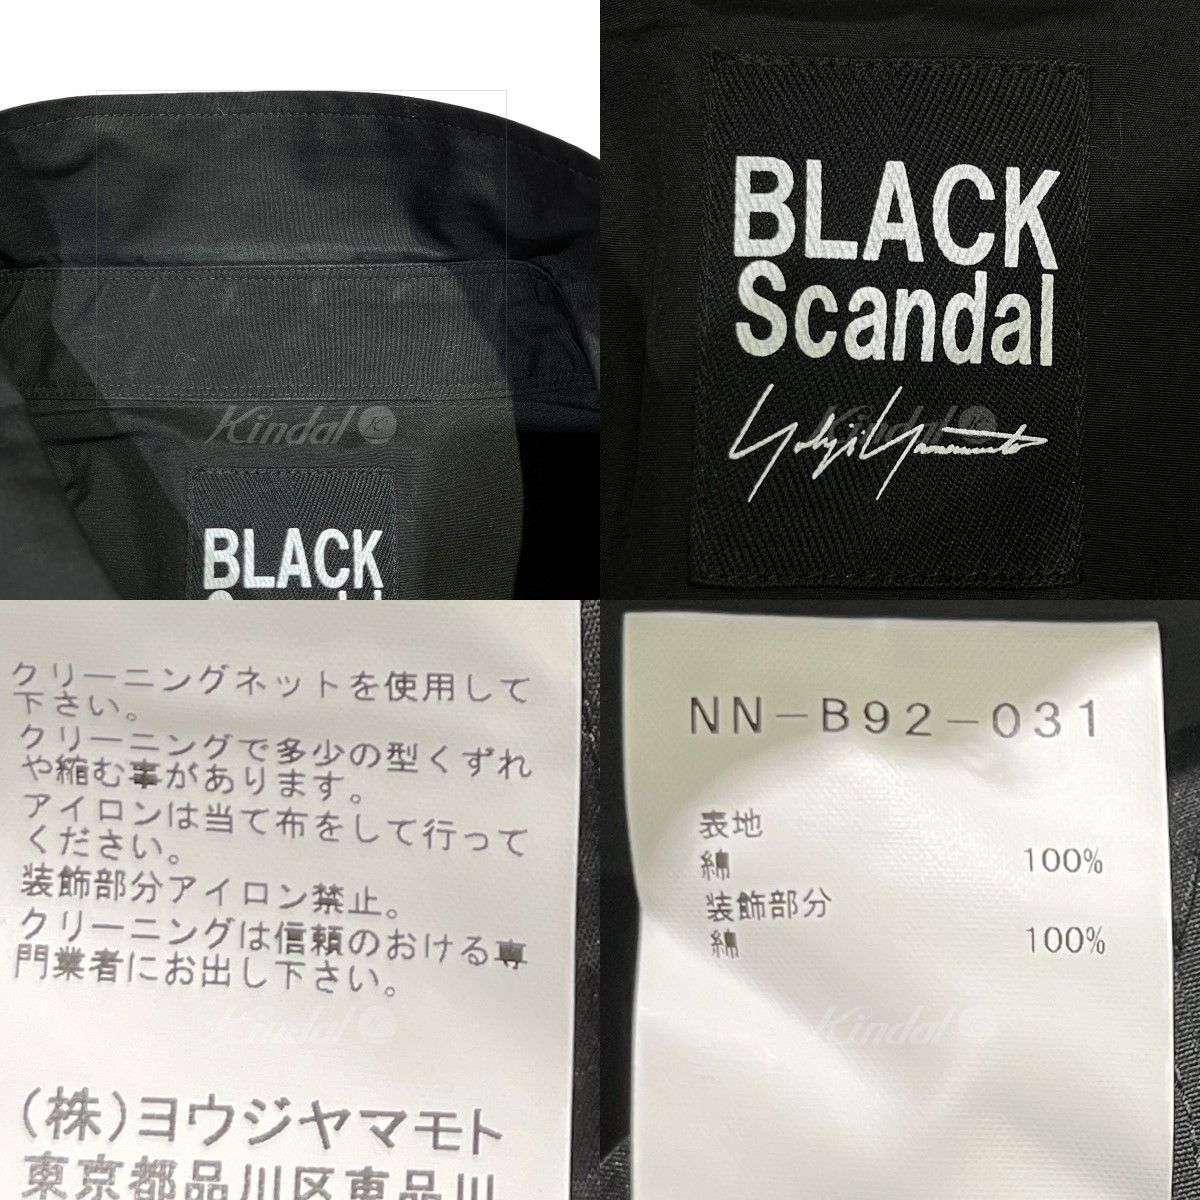 Yohji Yamamoto BLACK Scandal Yohji Yamamoto 20SS patchwork long shirt |  Grailed